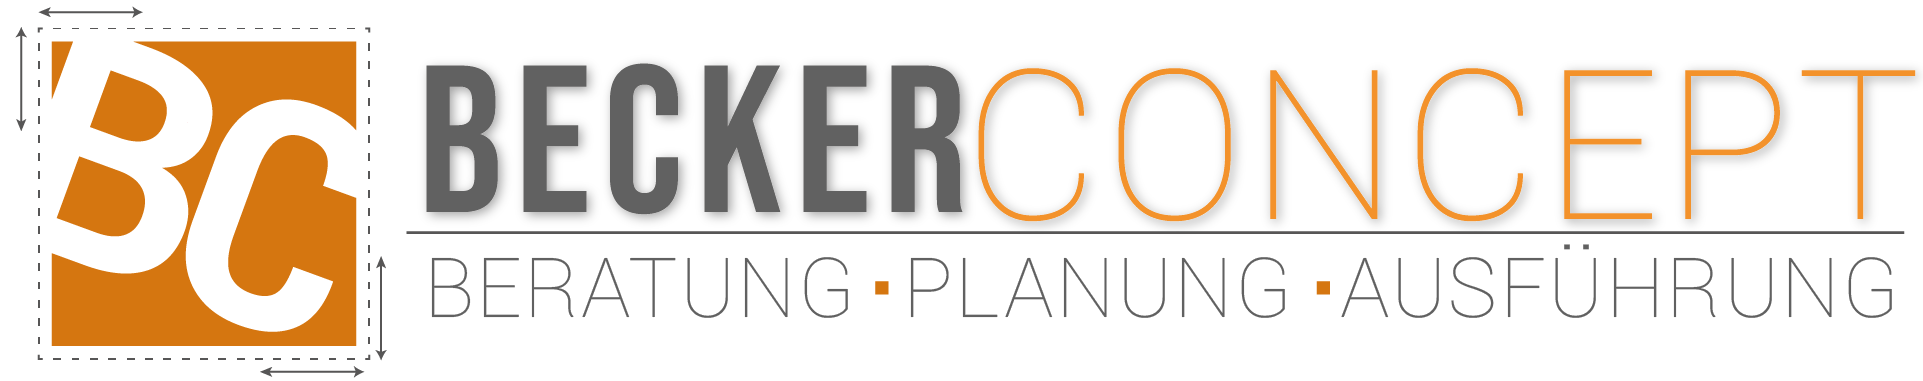 Becker Concept Logo